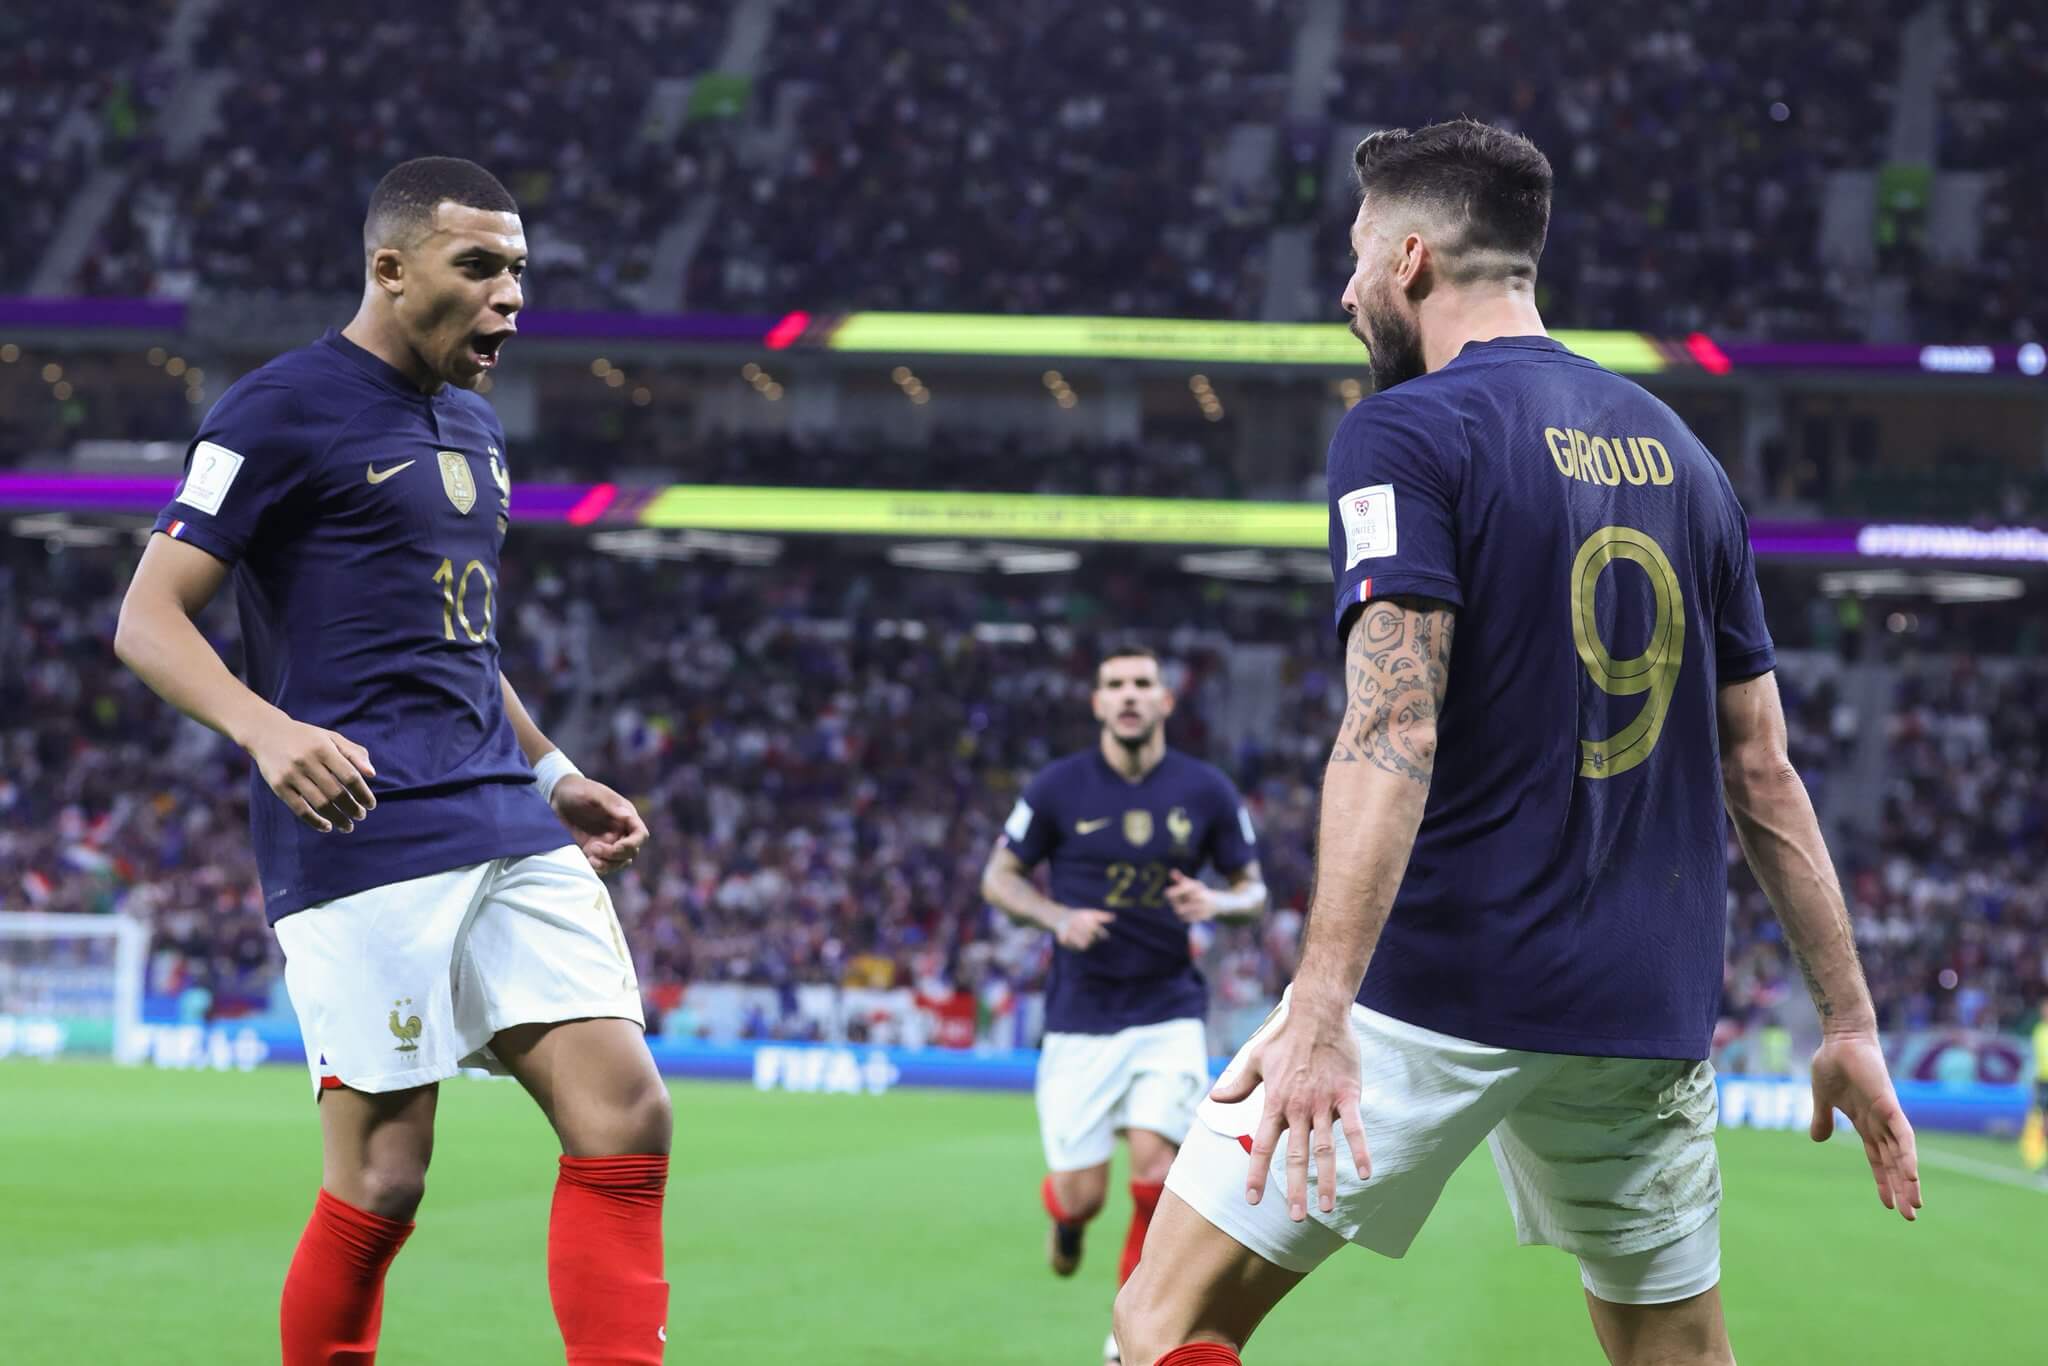 ԱԱ-2022. Ֆրանսիան   վստահ խաղով հաղթեց  Լեհաստանին` դուրս գալով 1/4 եզրափակիչ 🎥